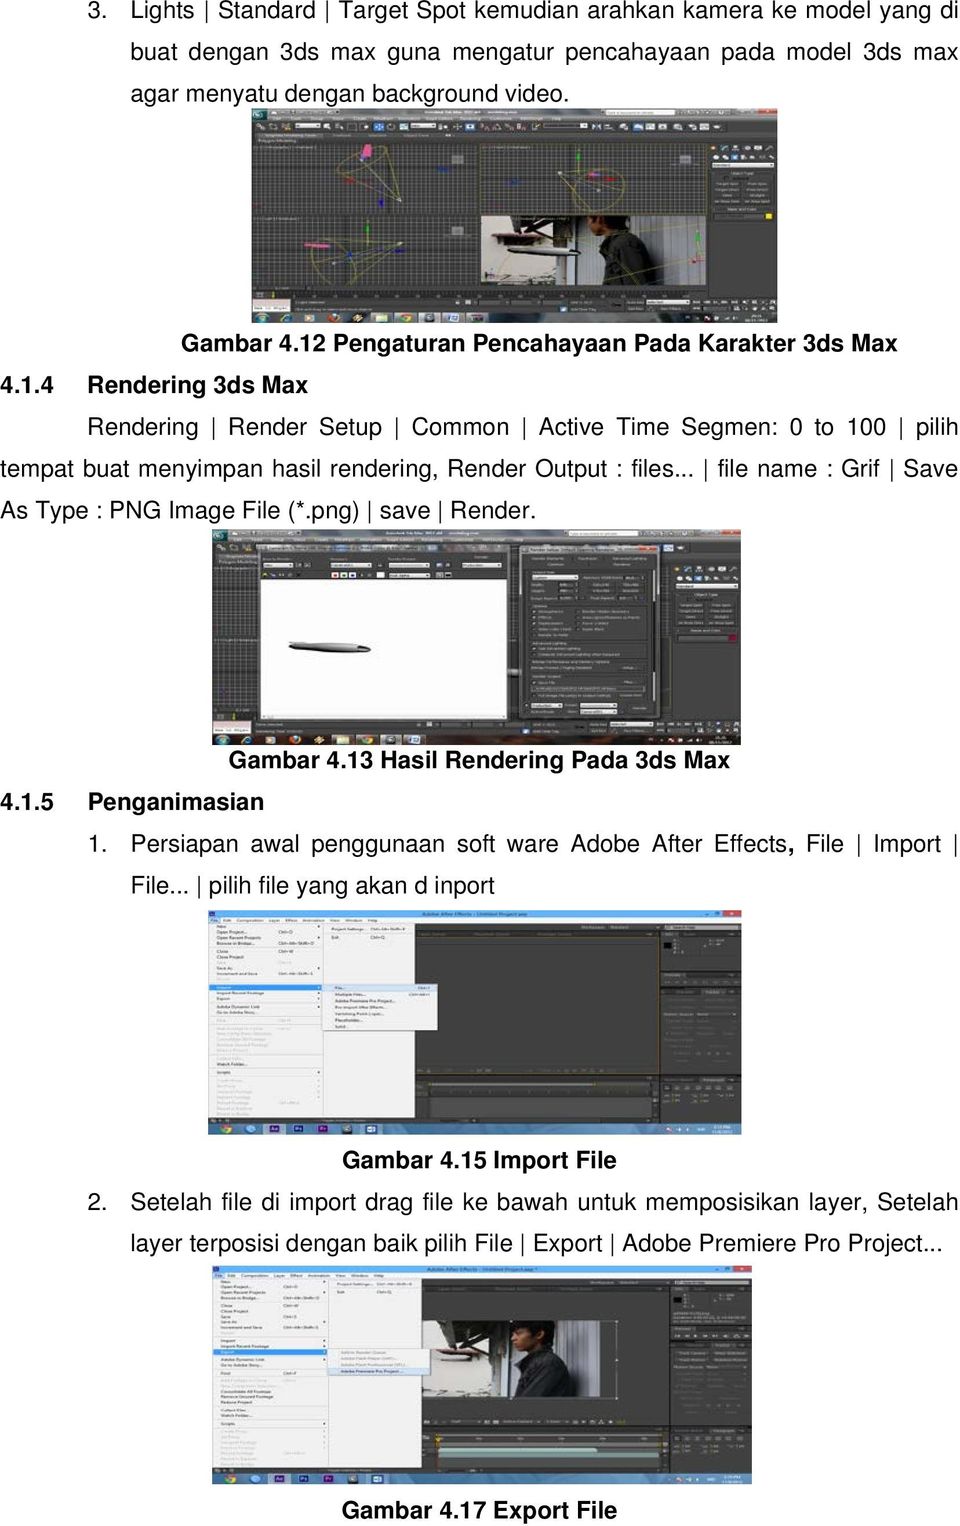 .. file name : Grif Save As Type : PNG Image File (*.png) save Render. Gambar 4.13 Hasil Rendering Pada 3ds Max 4.1.5 Penganimasian 1.